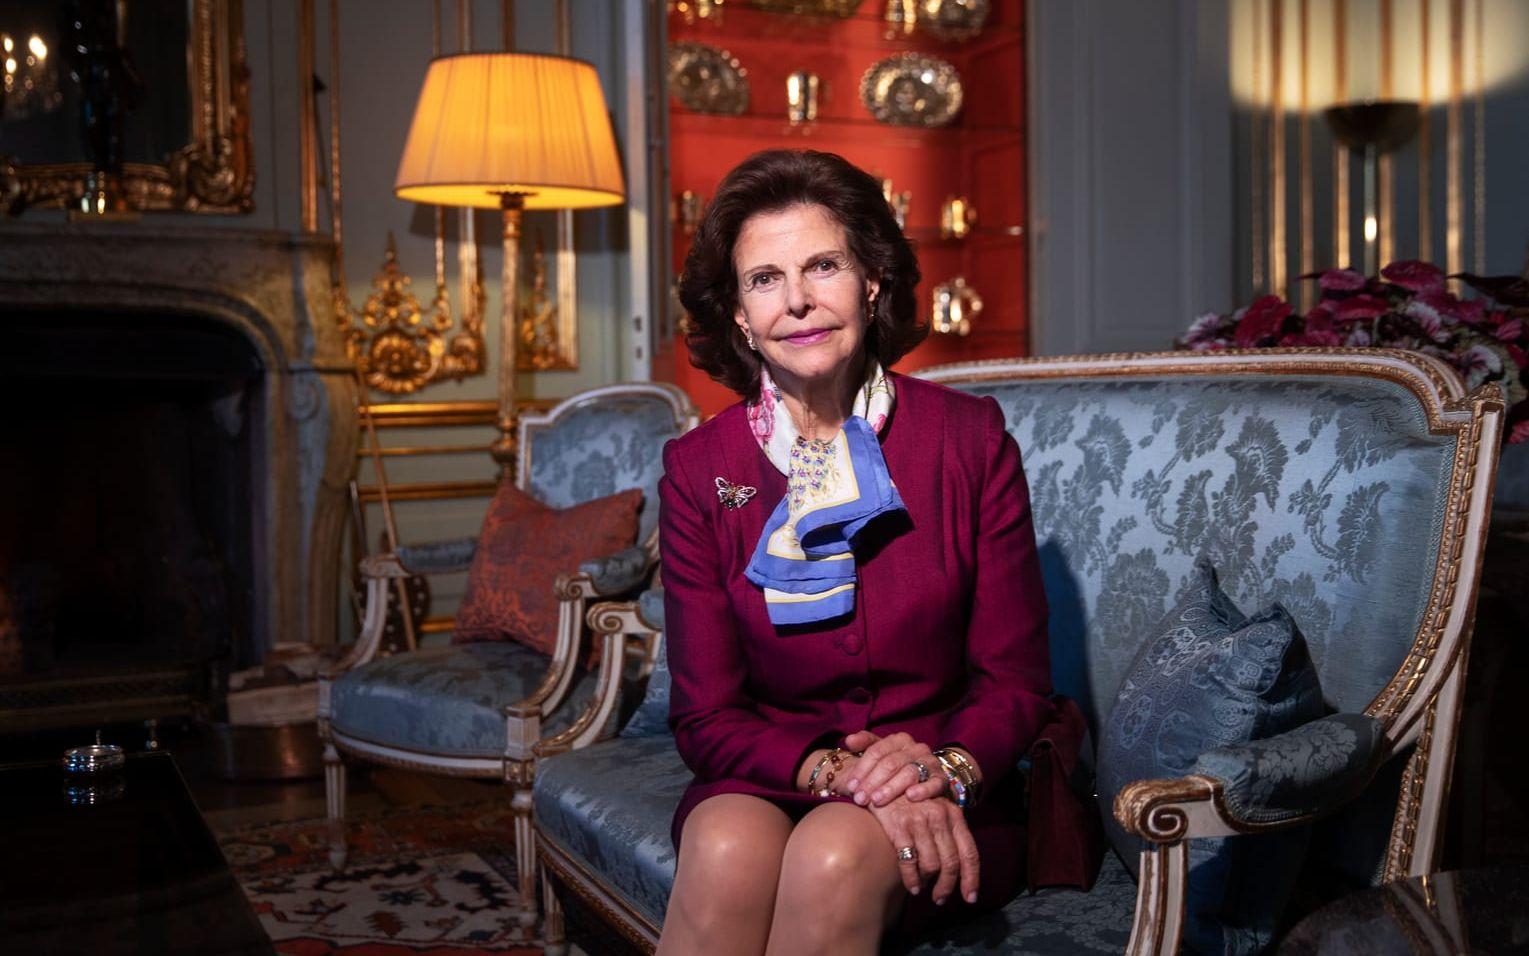 Den 23 december fyllde drottning Silvia 79 år. Därför ”sköts salut” på Skansen Lejonet vid 12. Se hennes statsbesök under det gångna året. 